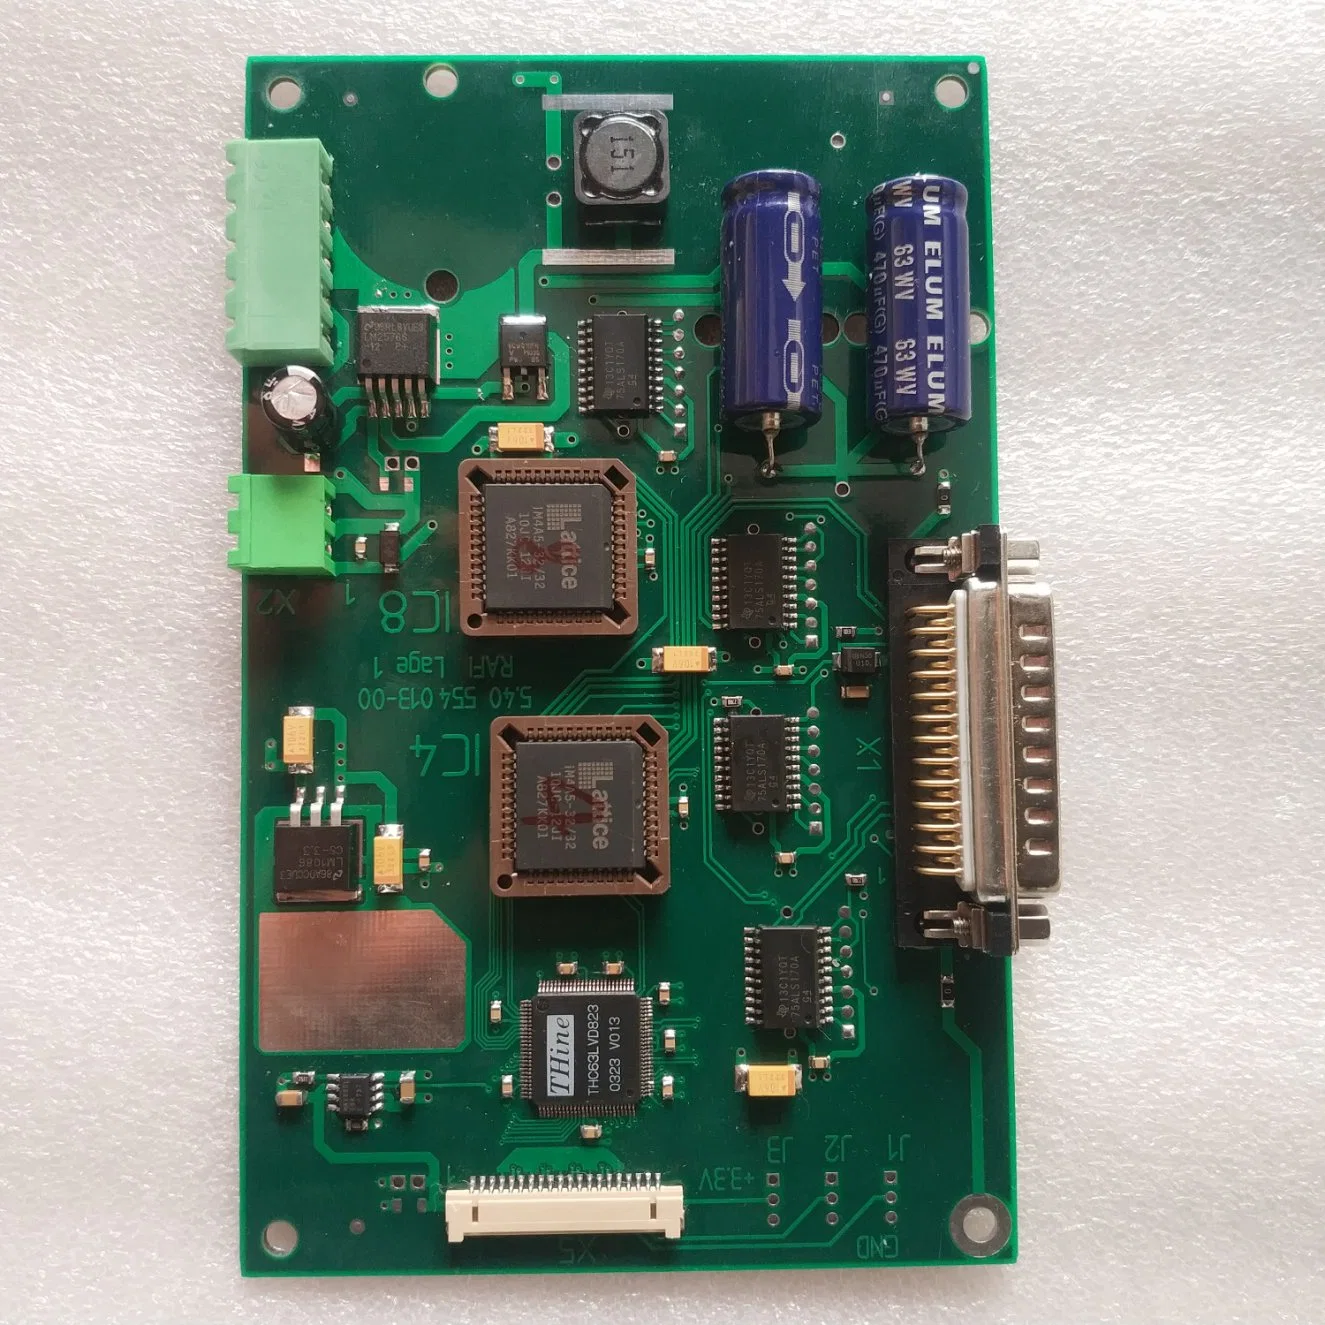 Original Used Polar Adad05 054795 Circuit Board IC4/IC8 Adad05 Integrated Circuit Adad Card for Polar 115/EMS/Xt/137